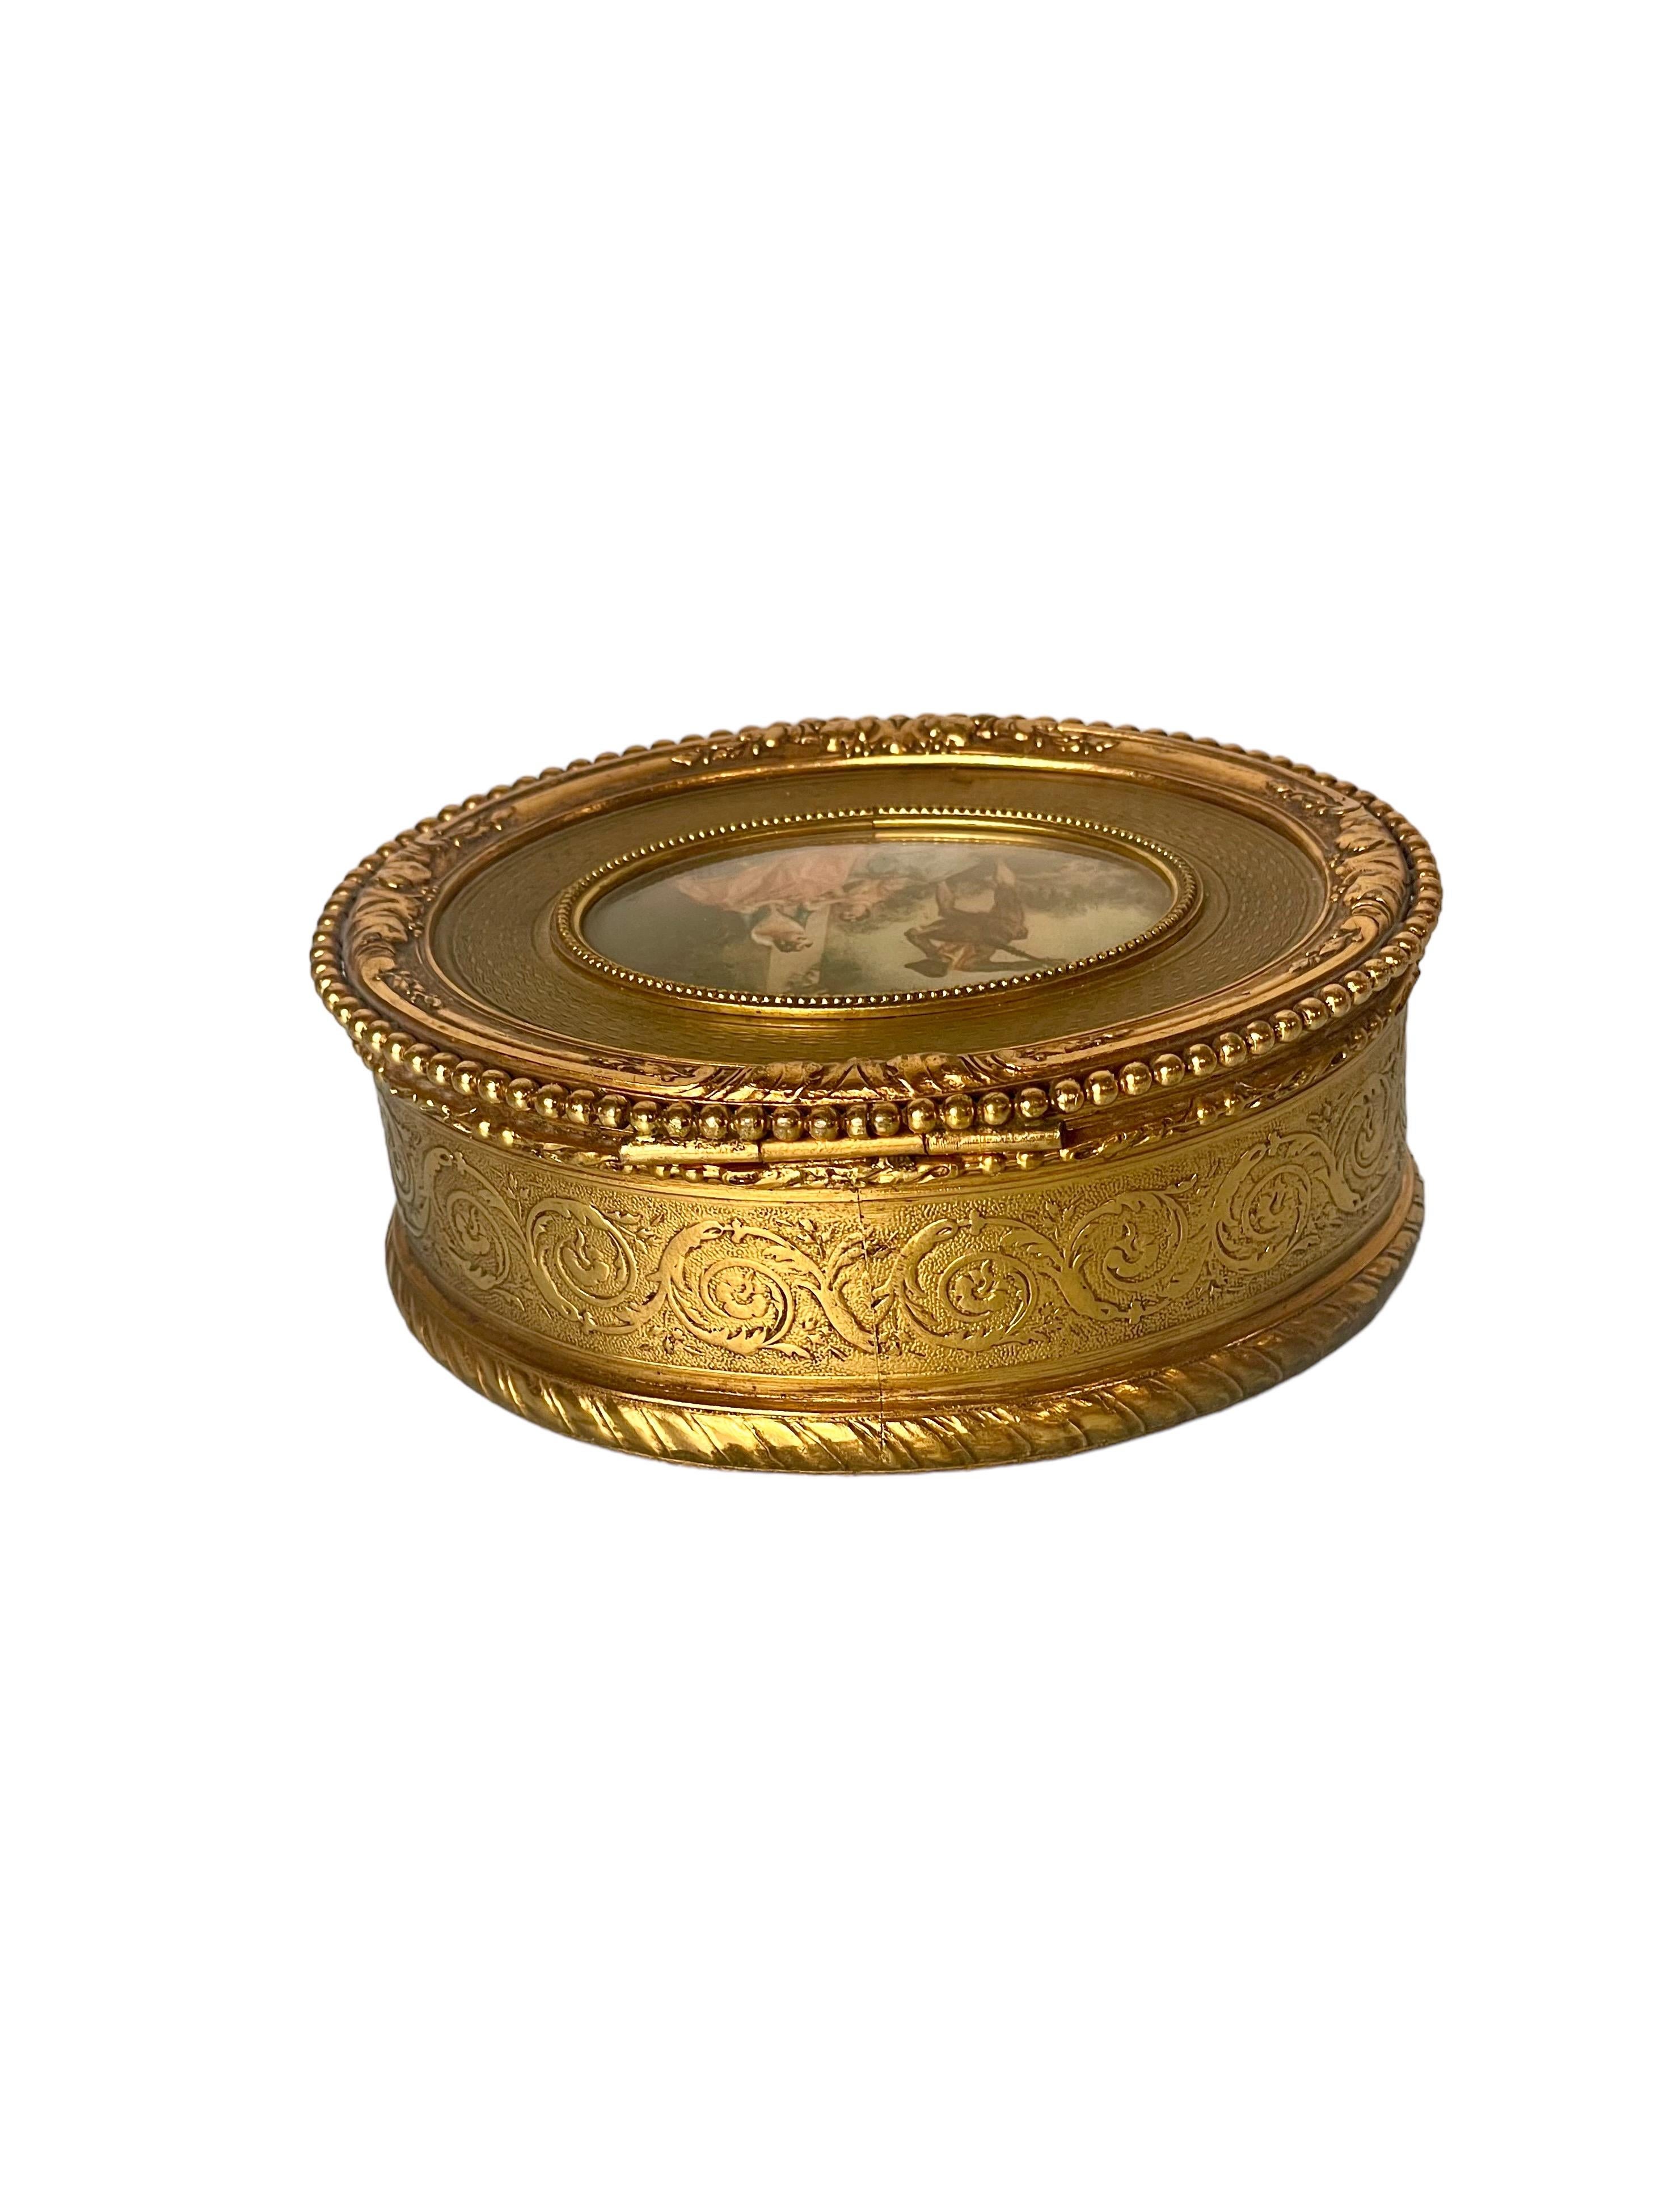 Très jolie boîte à bijoux de forme ovale en bronze doré, avec une exquise miniature centrale représentant un jeune homme jouant la sérénade à deux jeunes femmes avec un luth. Ce coffret de style Louis XVI est étonnamment détaillé avec un motif